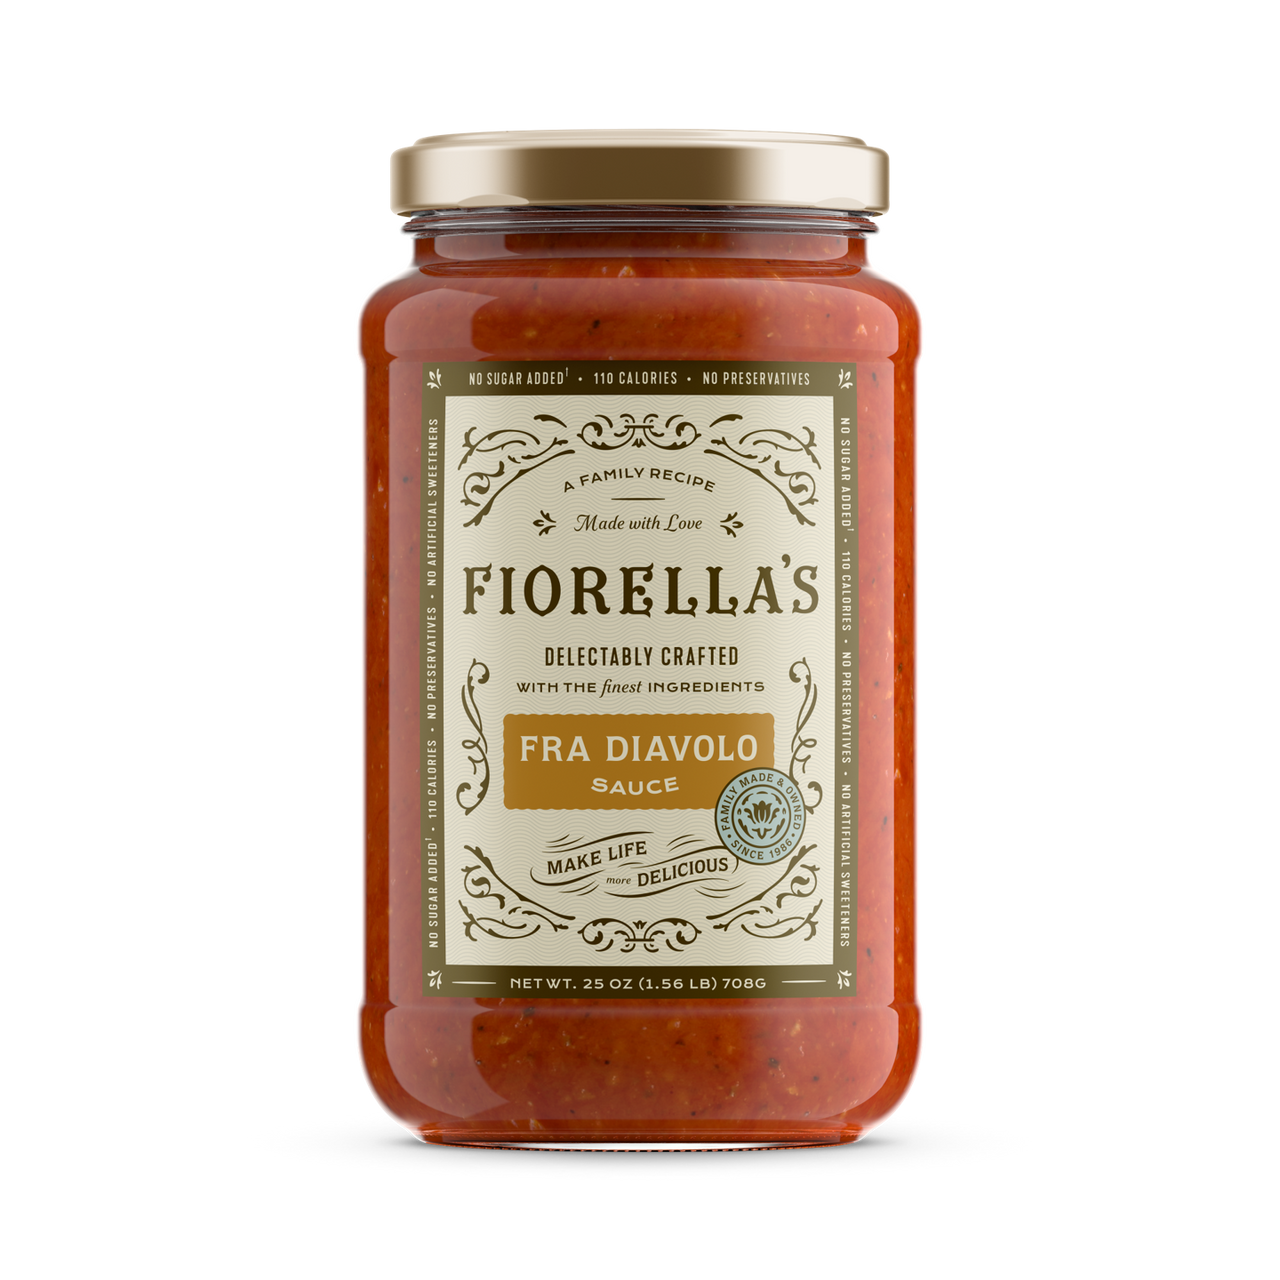 Fiorella's Fra Diavolo Sauce